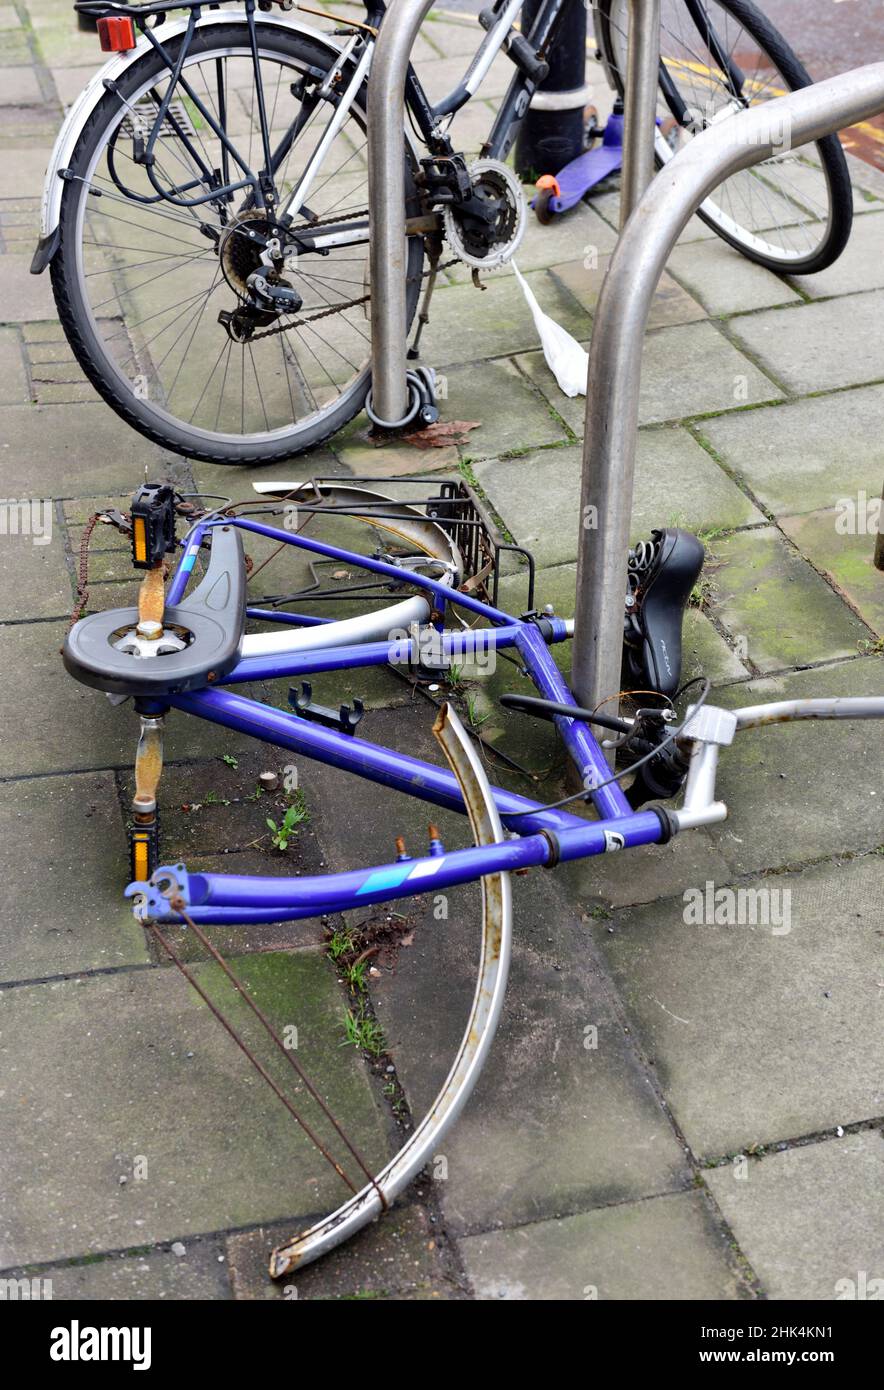 Vélo vandalisé dépouillé de pièces amovibles alors qu'enfermé dans la rue publique et maintenant abandonné Banque D'Images